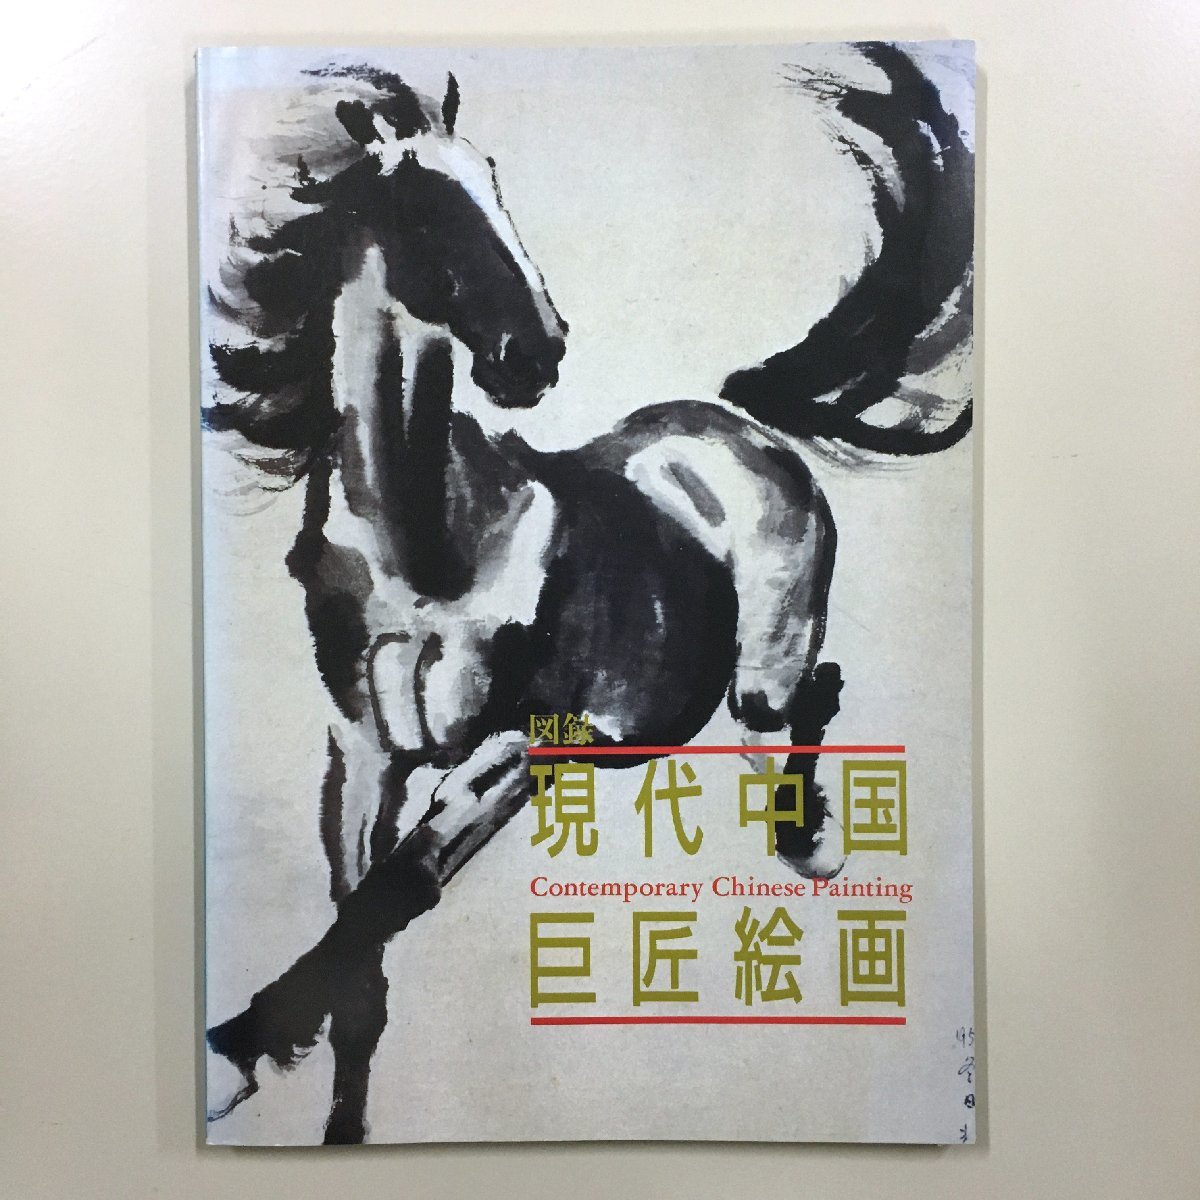 सूचीपत्र समकालीन चीनी मास्टर पेंटिंग्स एहोसाई कला केंद्र जापान-चीन मैत्री संघ एहोसाई क्यू बैशी हुआंग चू और अन्य बैग के साथ कला पुस्तक कार्यों का संग्रह, चित्रकारी, कला पुस्तक, संग्रह, सूची